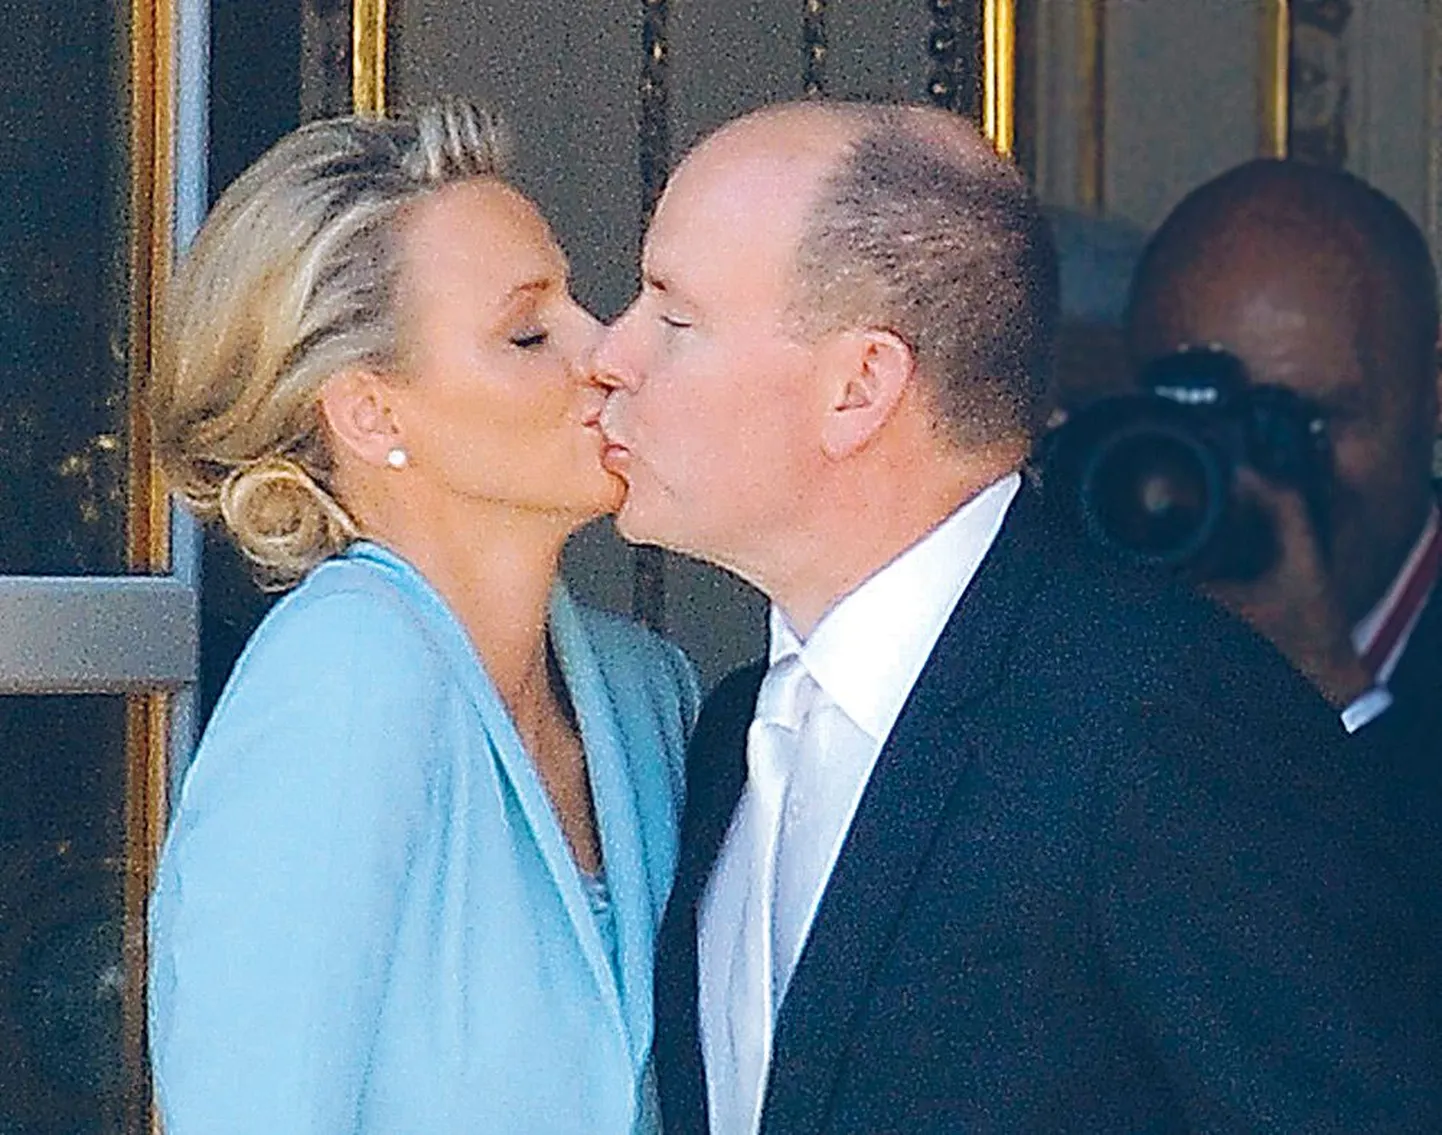 Vürst Albert II ja peatne vürstinna Charlene pärast ilmalikku registreerimist paleerõdul suudlemas.